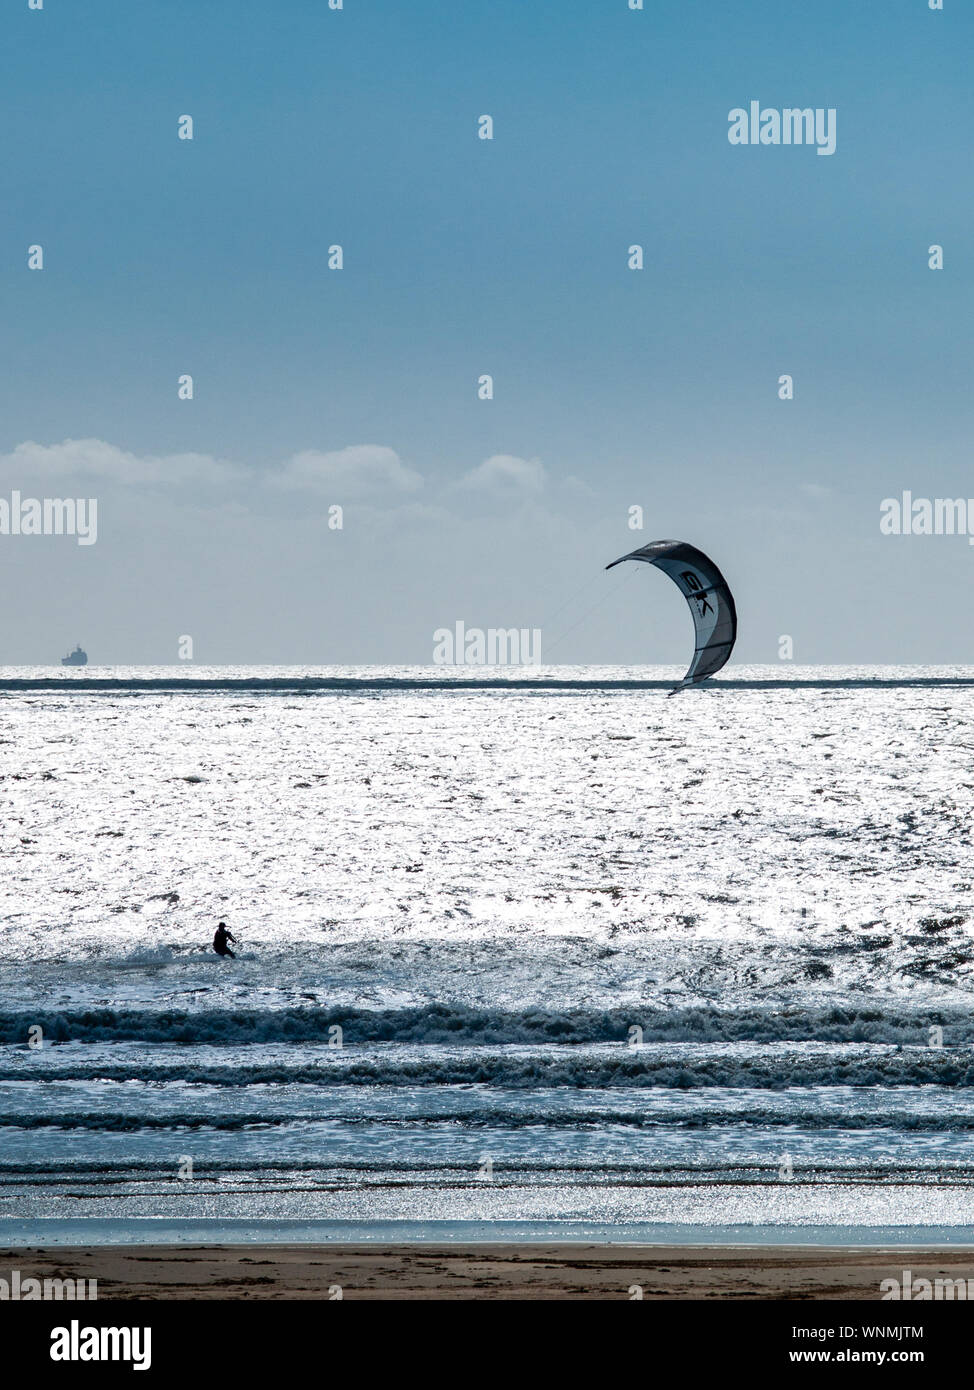 Kitesurfer découpé sur seascape lumineux à Aberavon Beach, Port Talbot, la baie de Swansea, Pays de Galles, Royaume-Uni. Banque D'Images